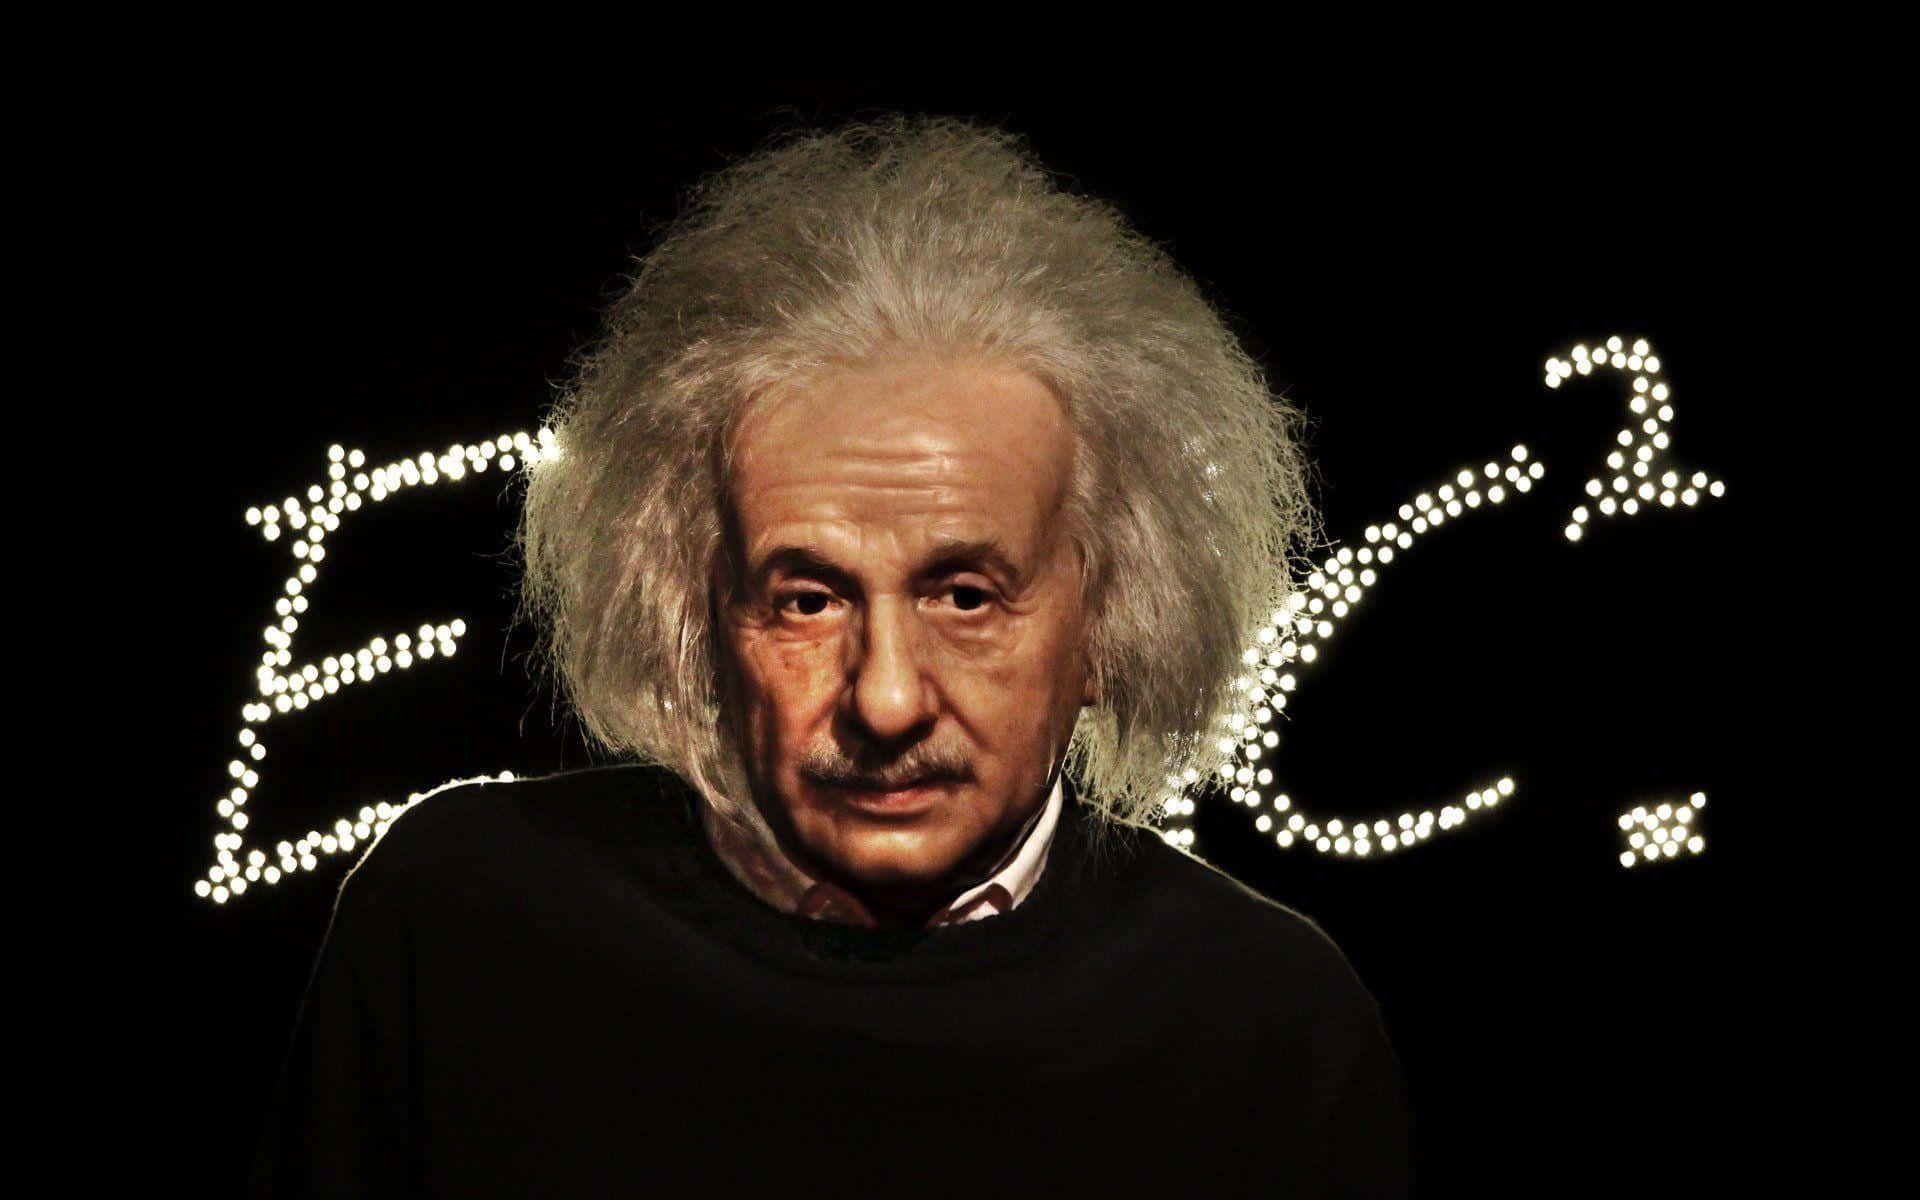 About Albert Einstein Wallpaper 4k Google Play version   Apptopia